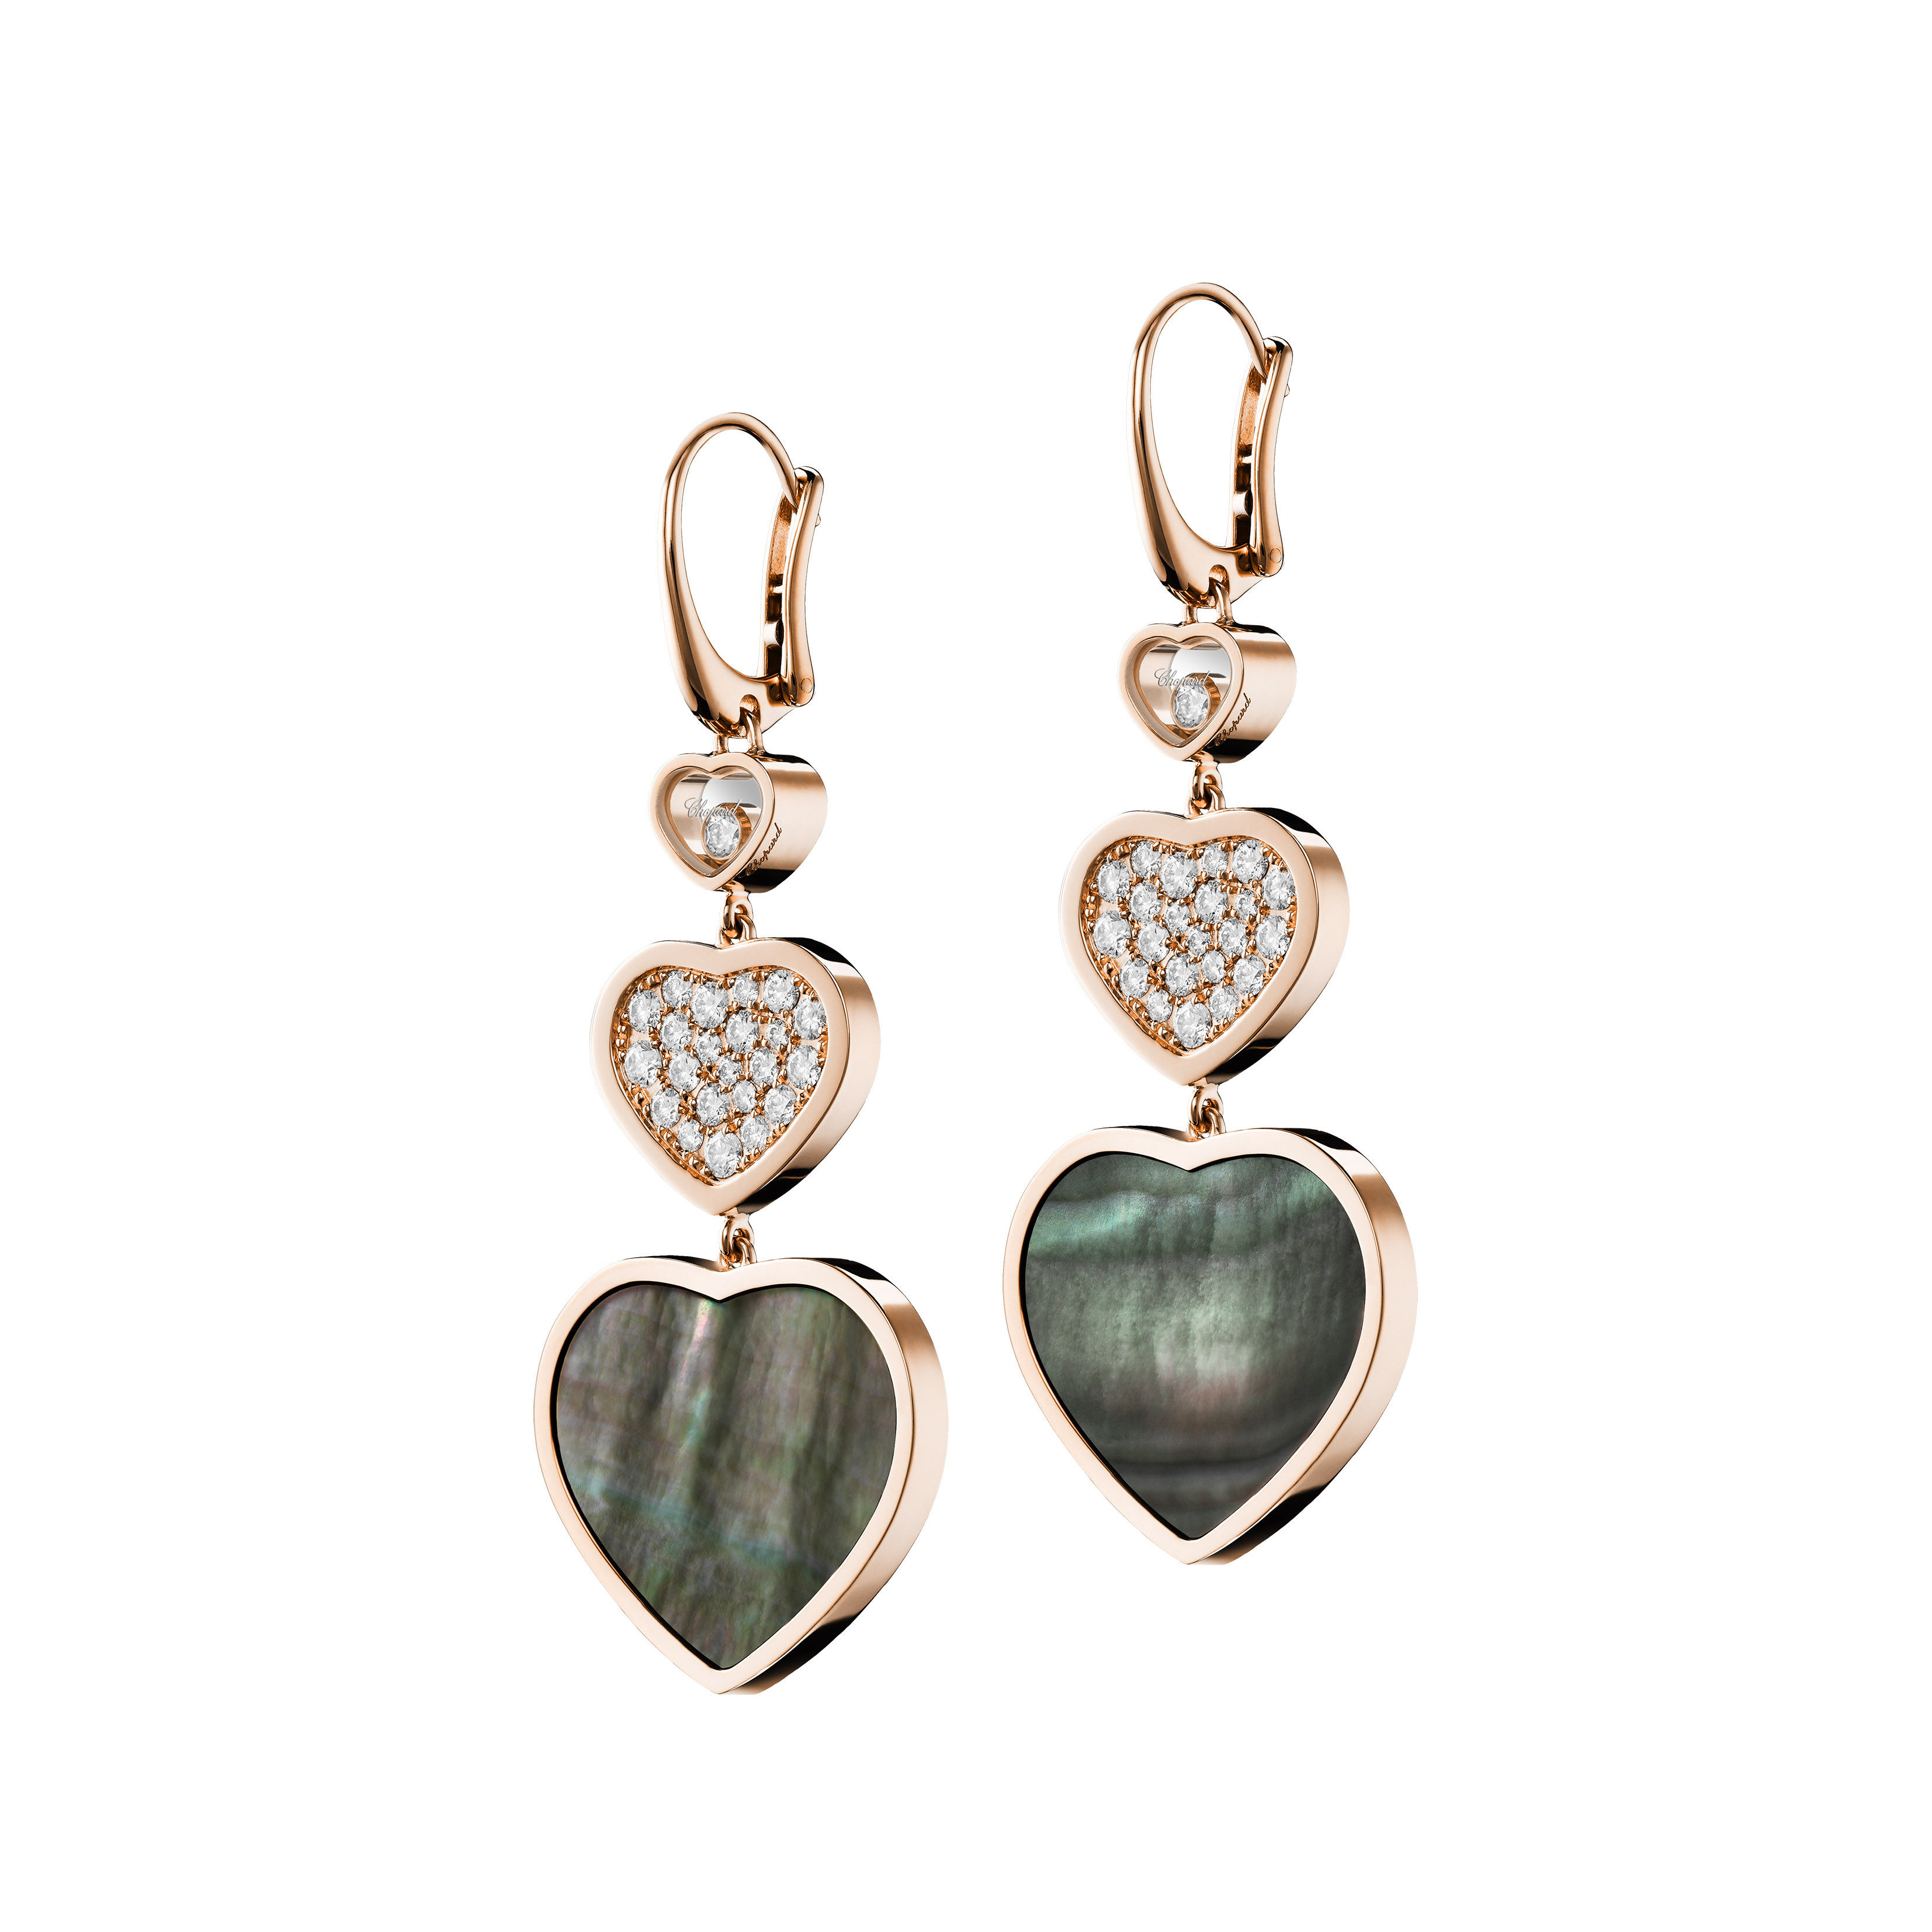 Happy Hearts earrings by Chopard